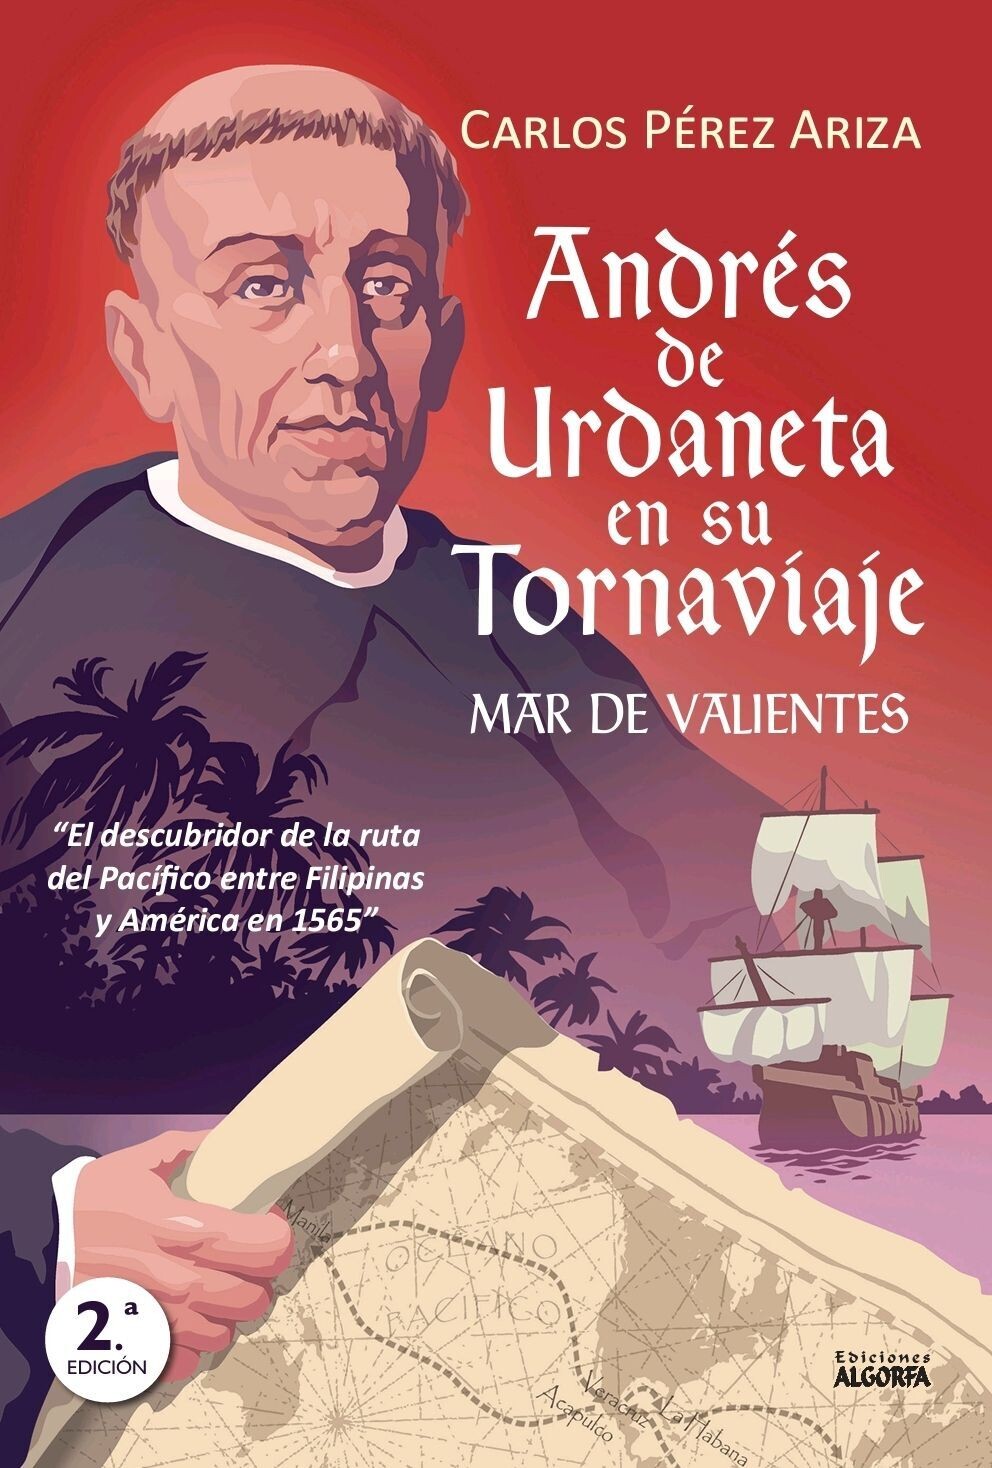 ANDRES DE URDANETA EN SU TORNAVIAJE. MAR DE VALIENTES. Carlos Pérez Ariza